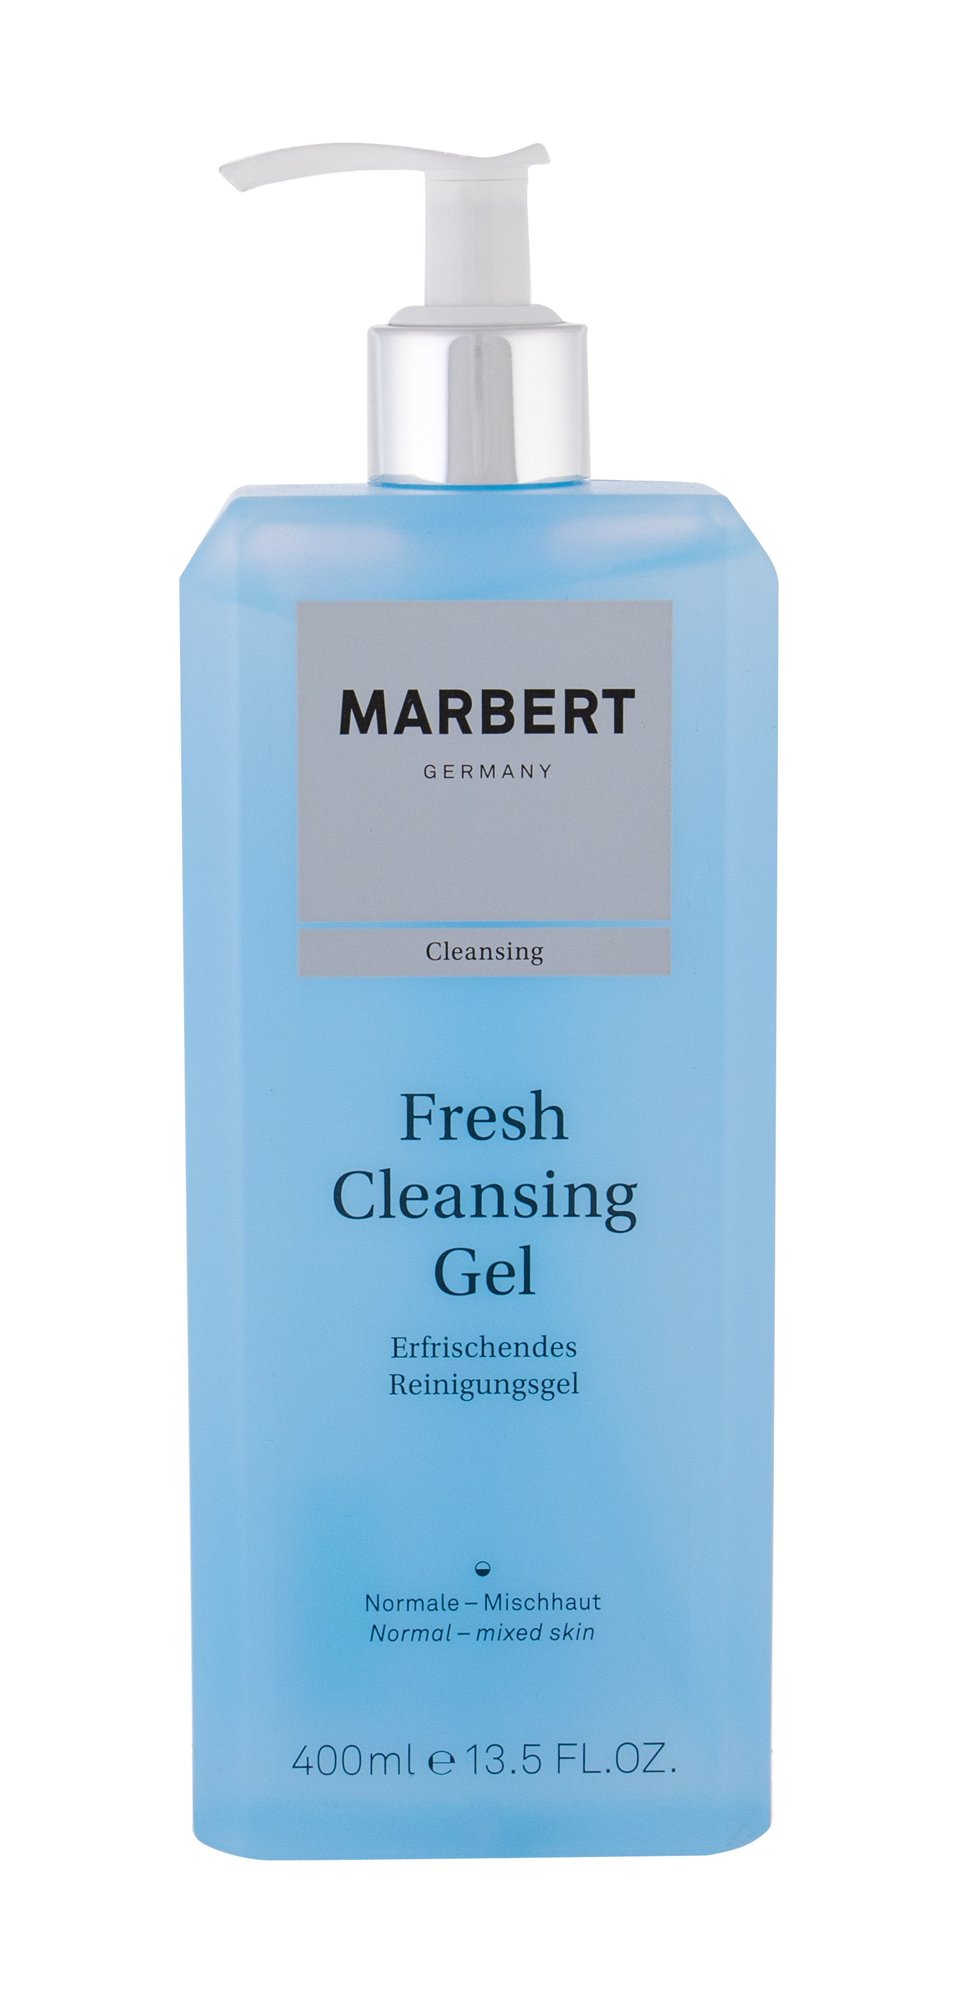 Marbert Cleansing Fresh Cleansing Gel veido gelis